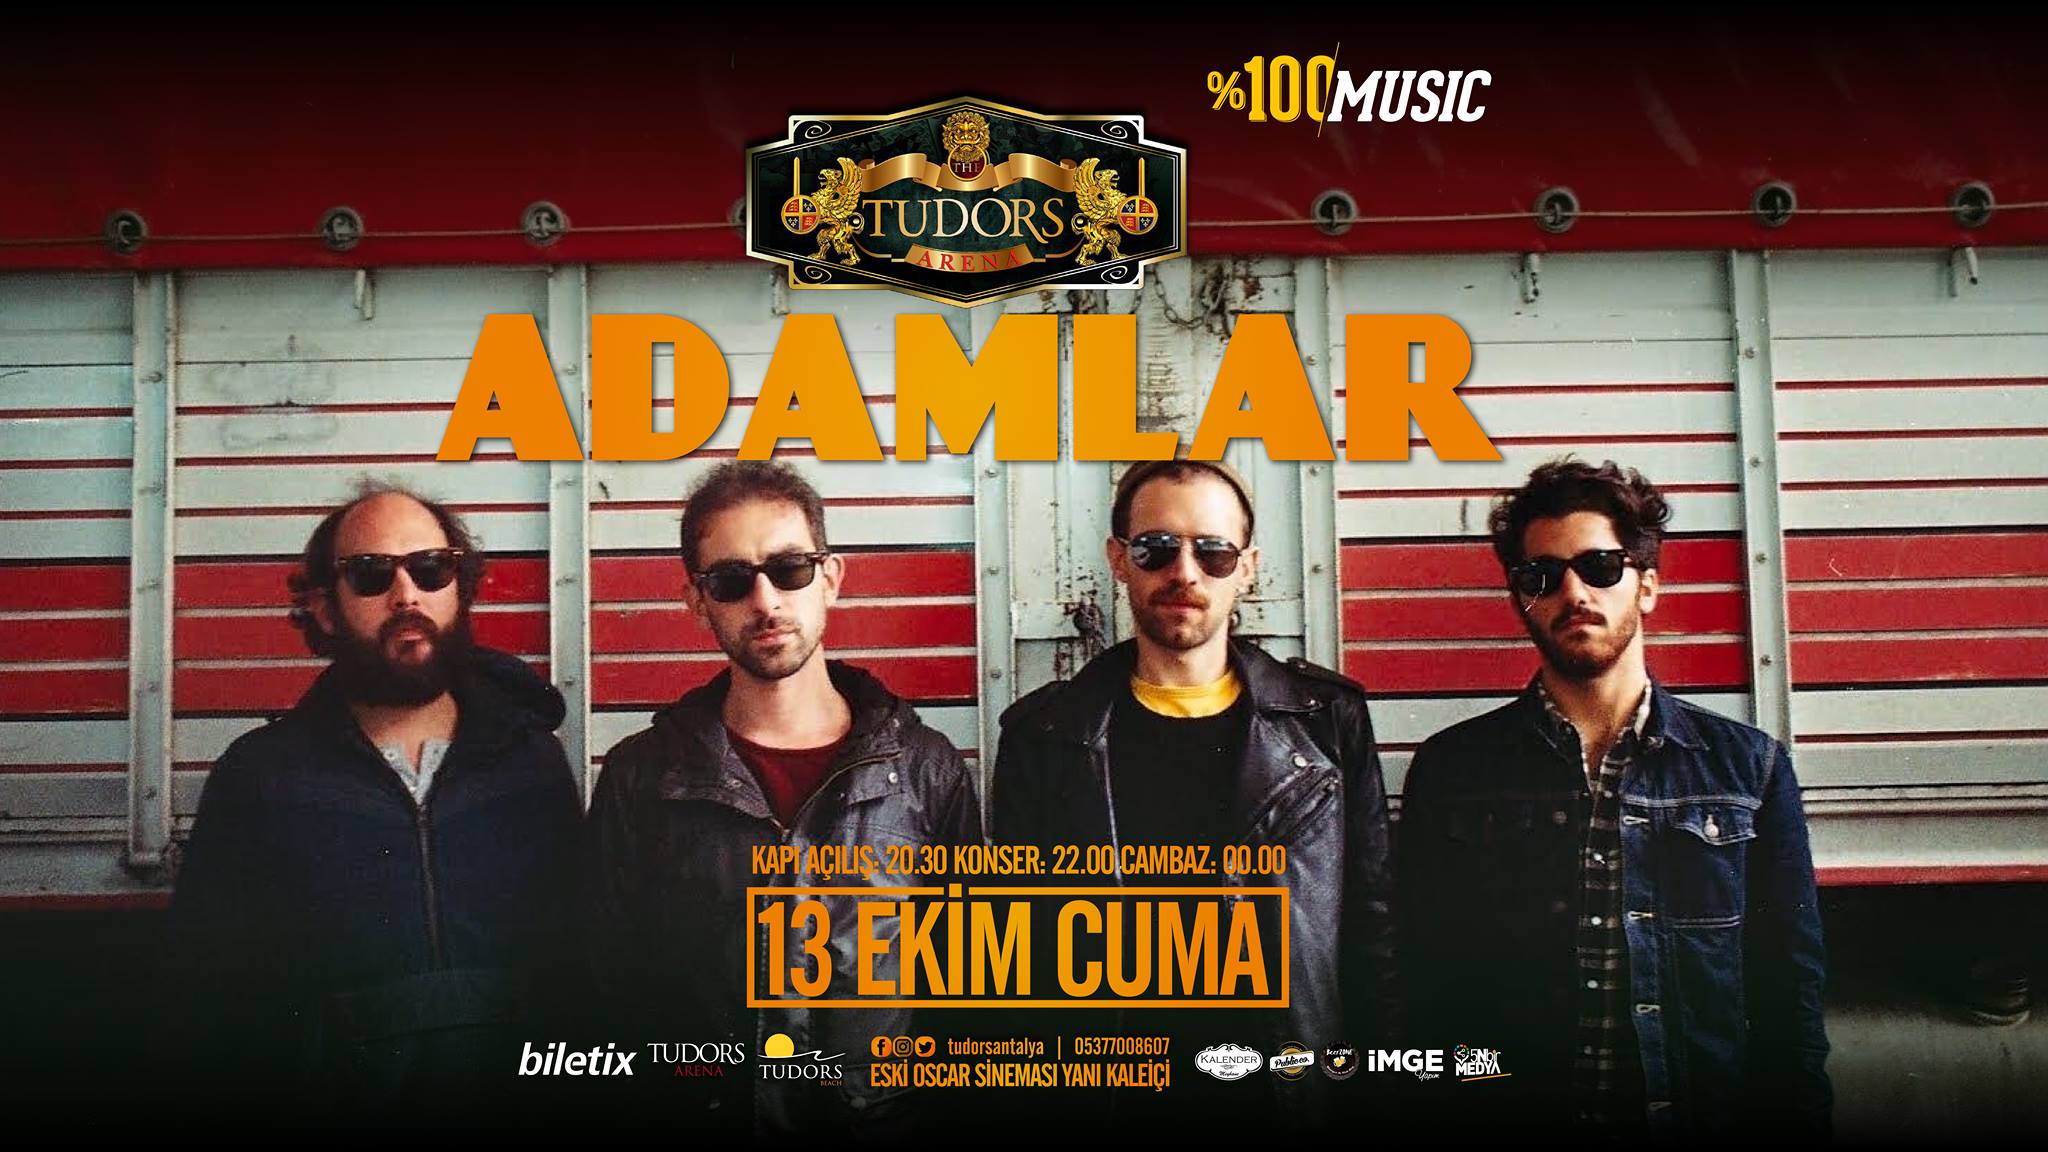 Концерт группы Adamlar пройдёт в Анталье 13 октября